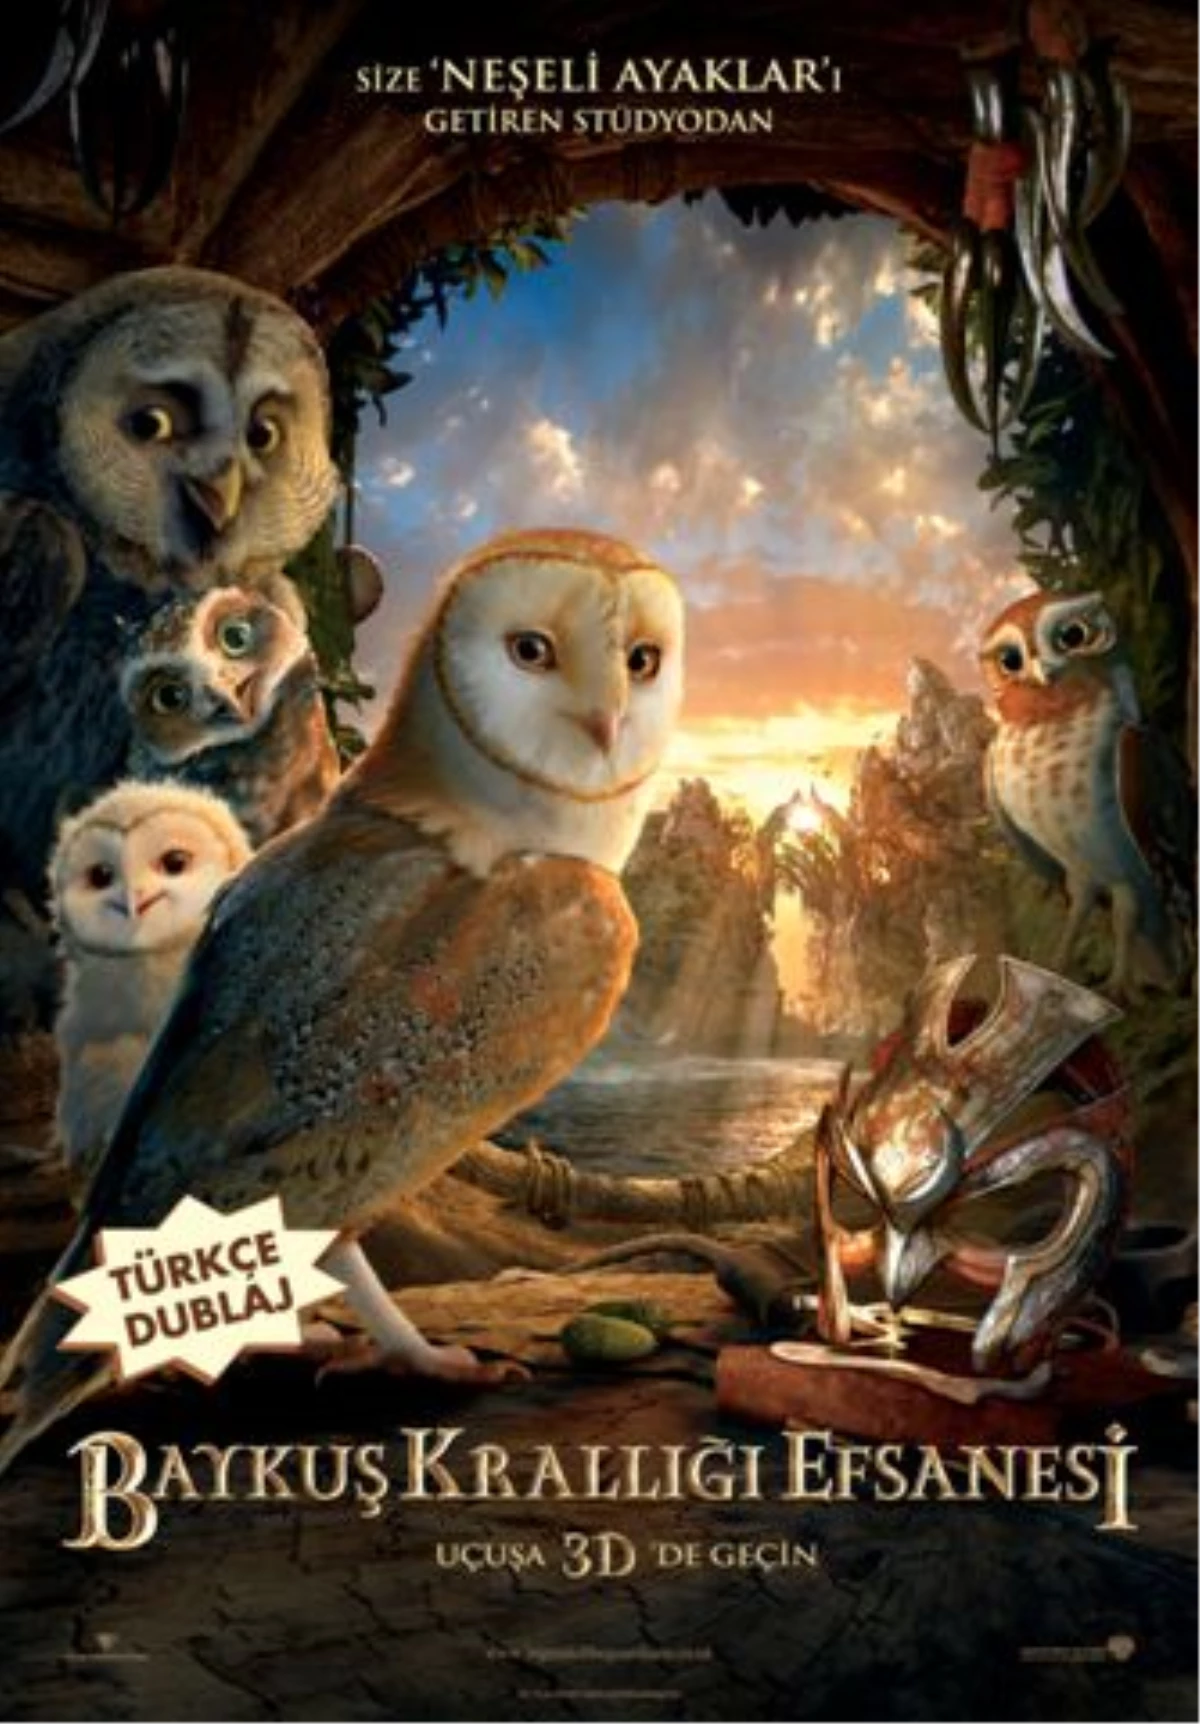 Baykuş Krallığı Efsanesi 1 Ekim 2010\'da Türkçe Dublajlı ve 3 Boyutlu Olarak Sinemalarda!